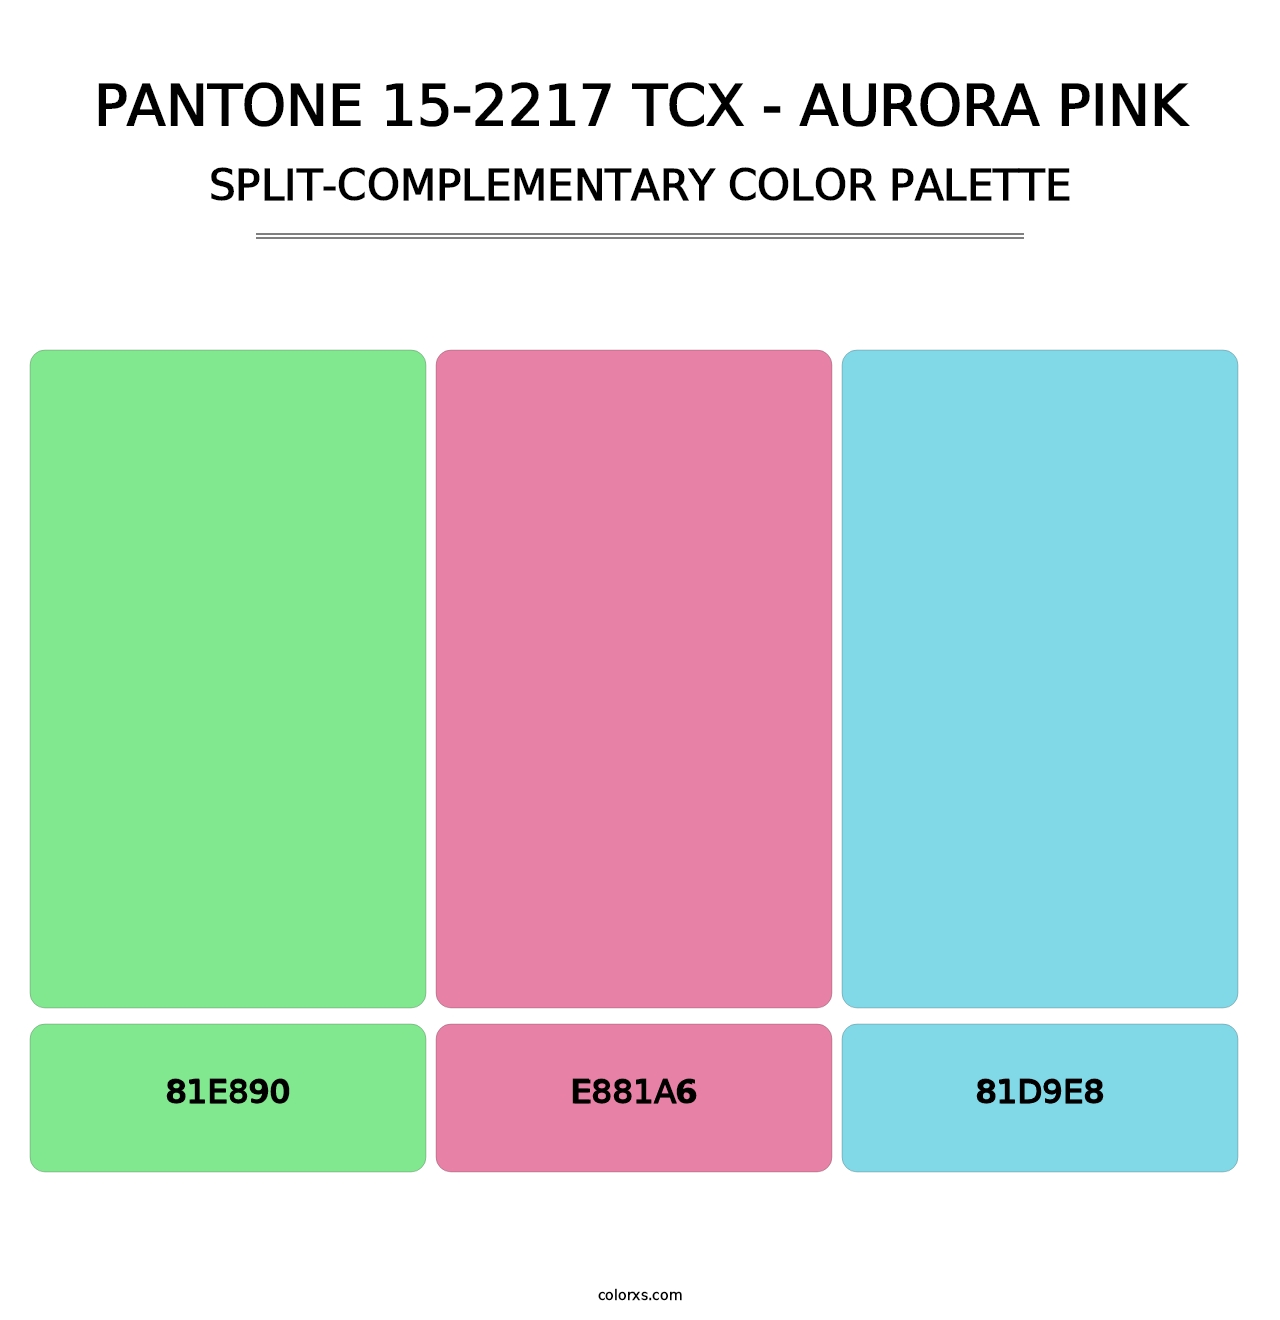 PANTONE 15-2217 TCX - Aurora Pink - Split-Complementary Color Palette